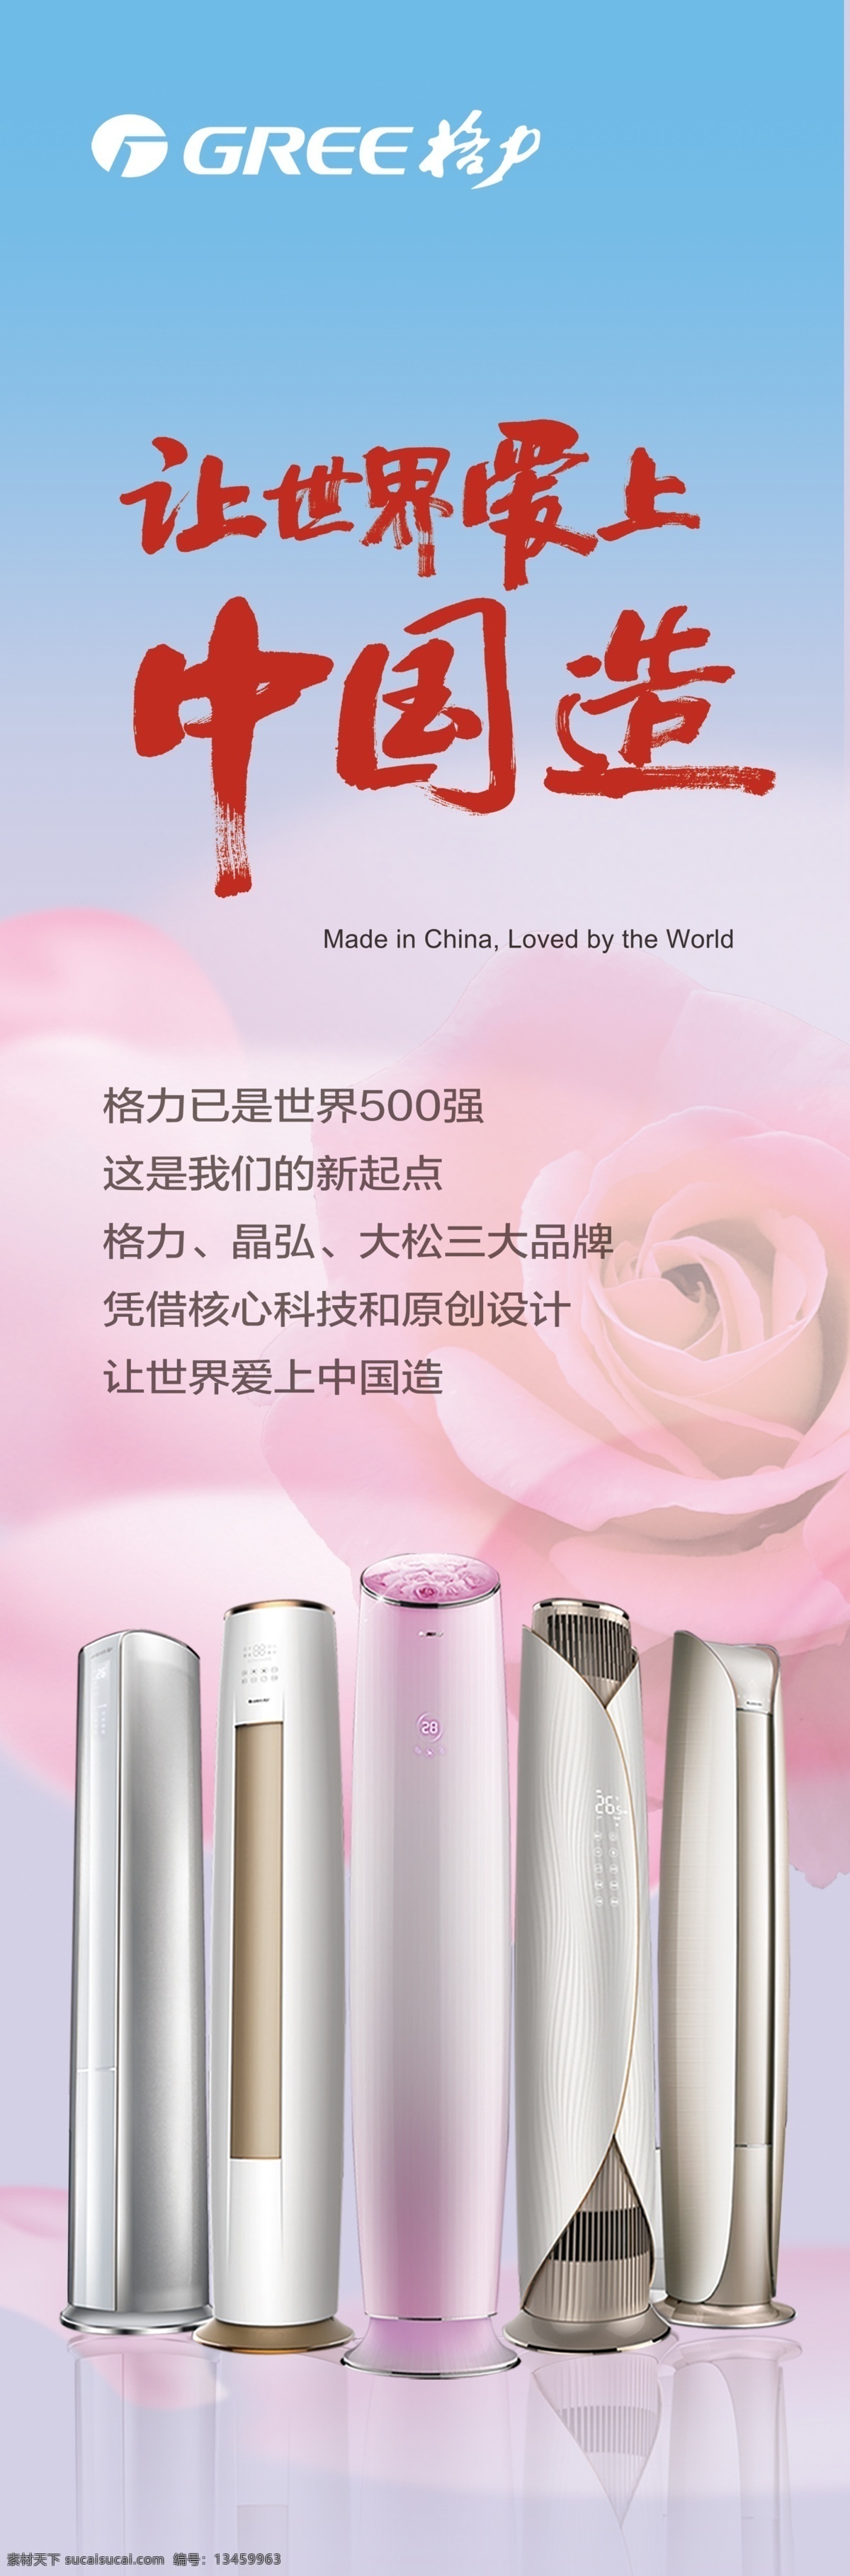 格力空调 格力 空调 格力灯箱 空调画面 让世界爱上 中国造 招贴设计